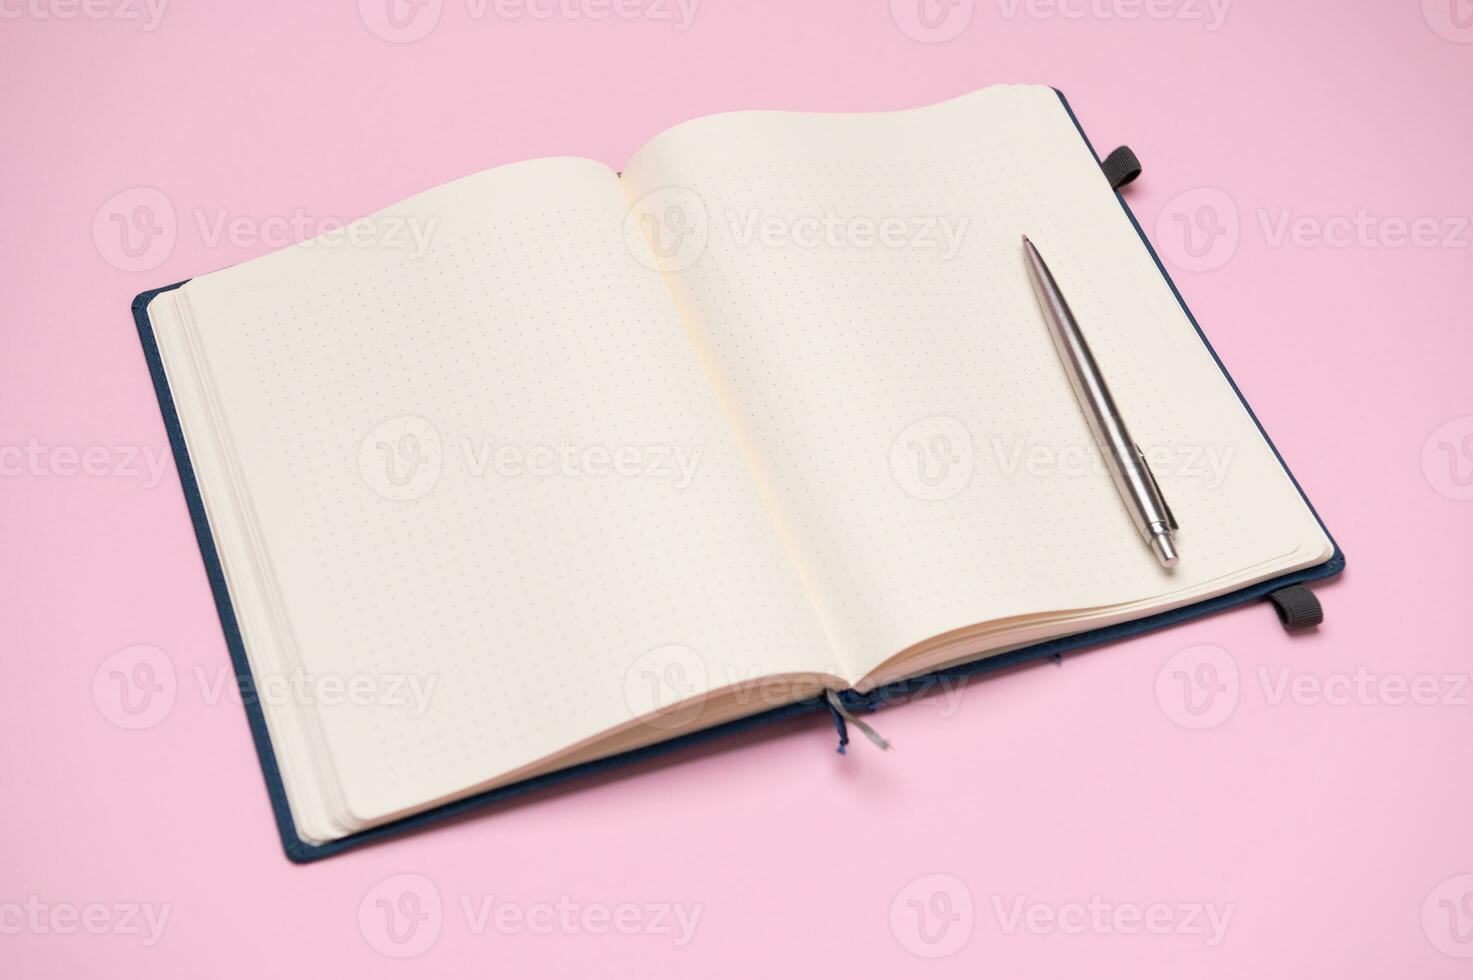 en silver- penna på en repa vaddera med tom sidor för anteckningar och scheman. företag, förvaltning och organisation begrepp foto